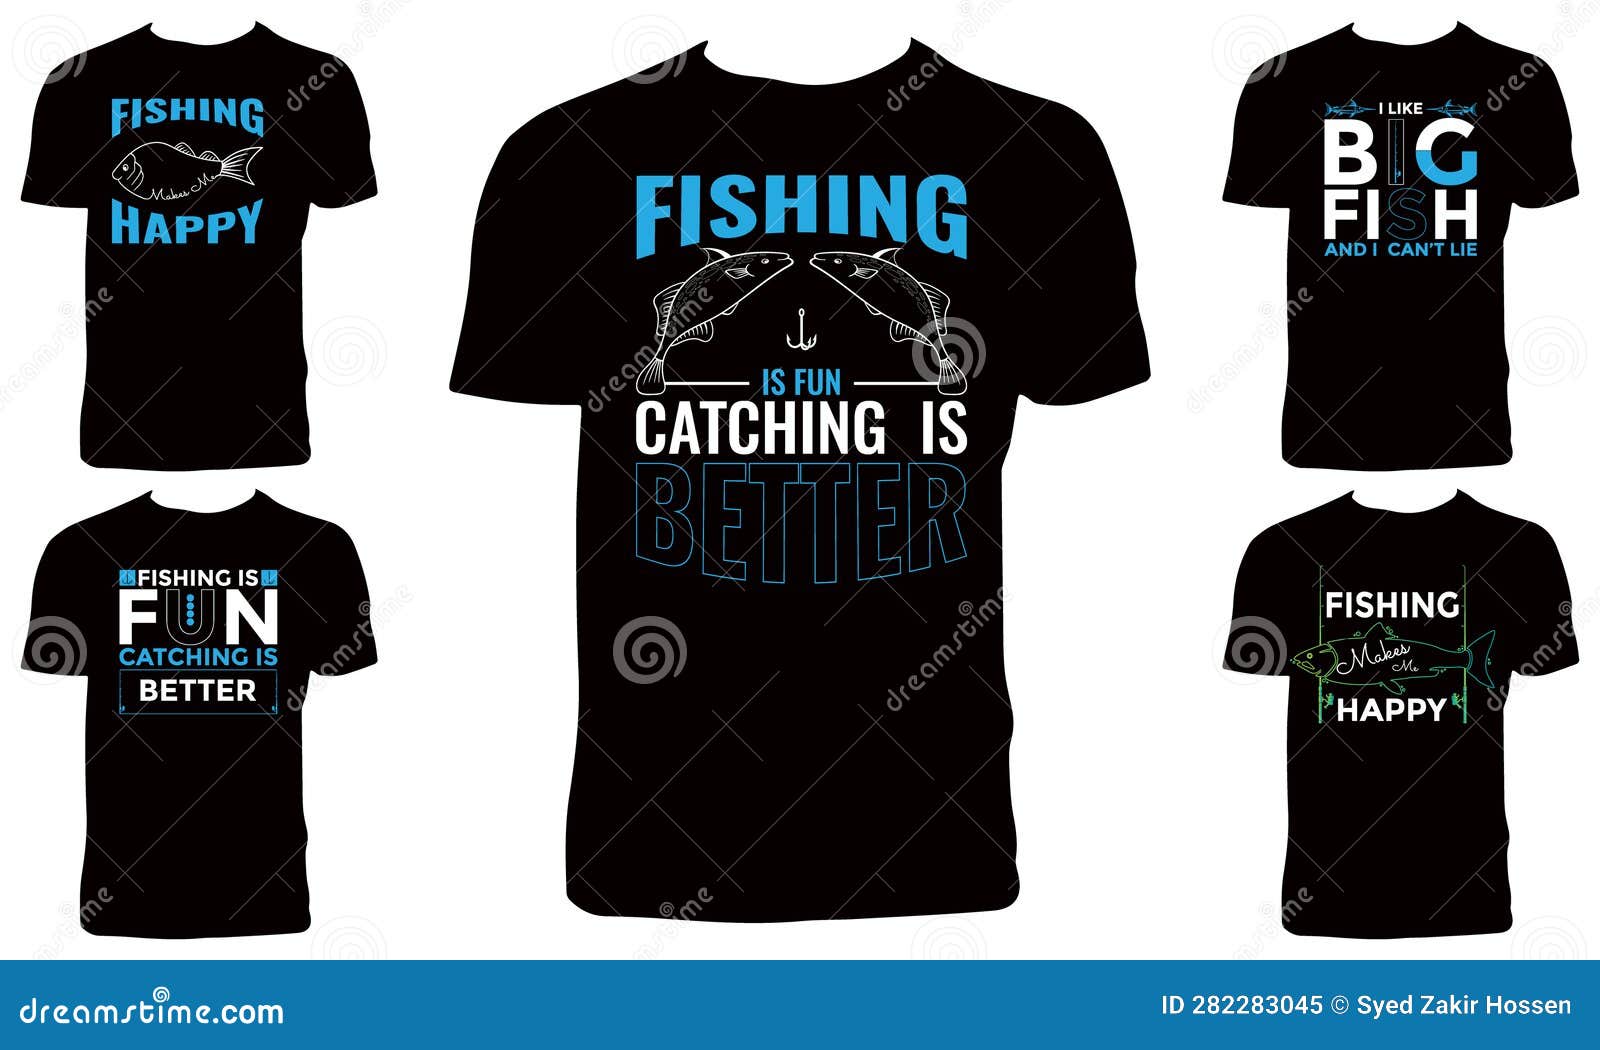 Fishing T-Shirt Design, Fishing T-Shirt Bundle , Fishing t shirt